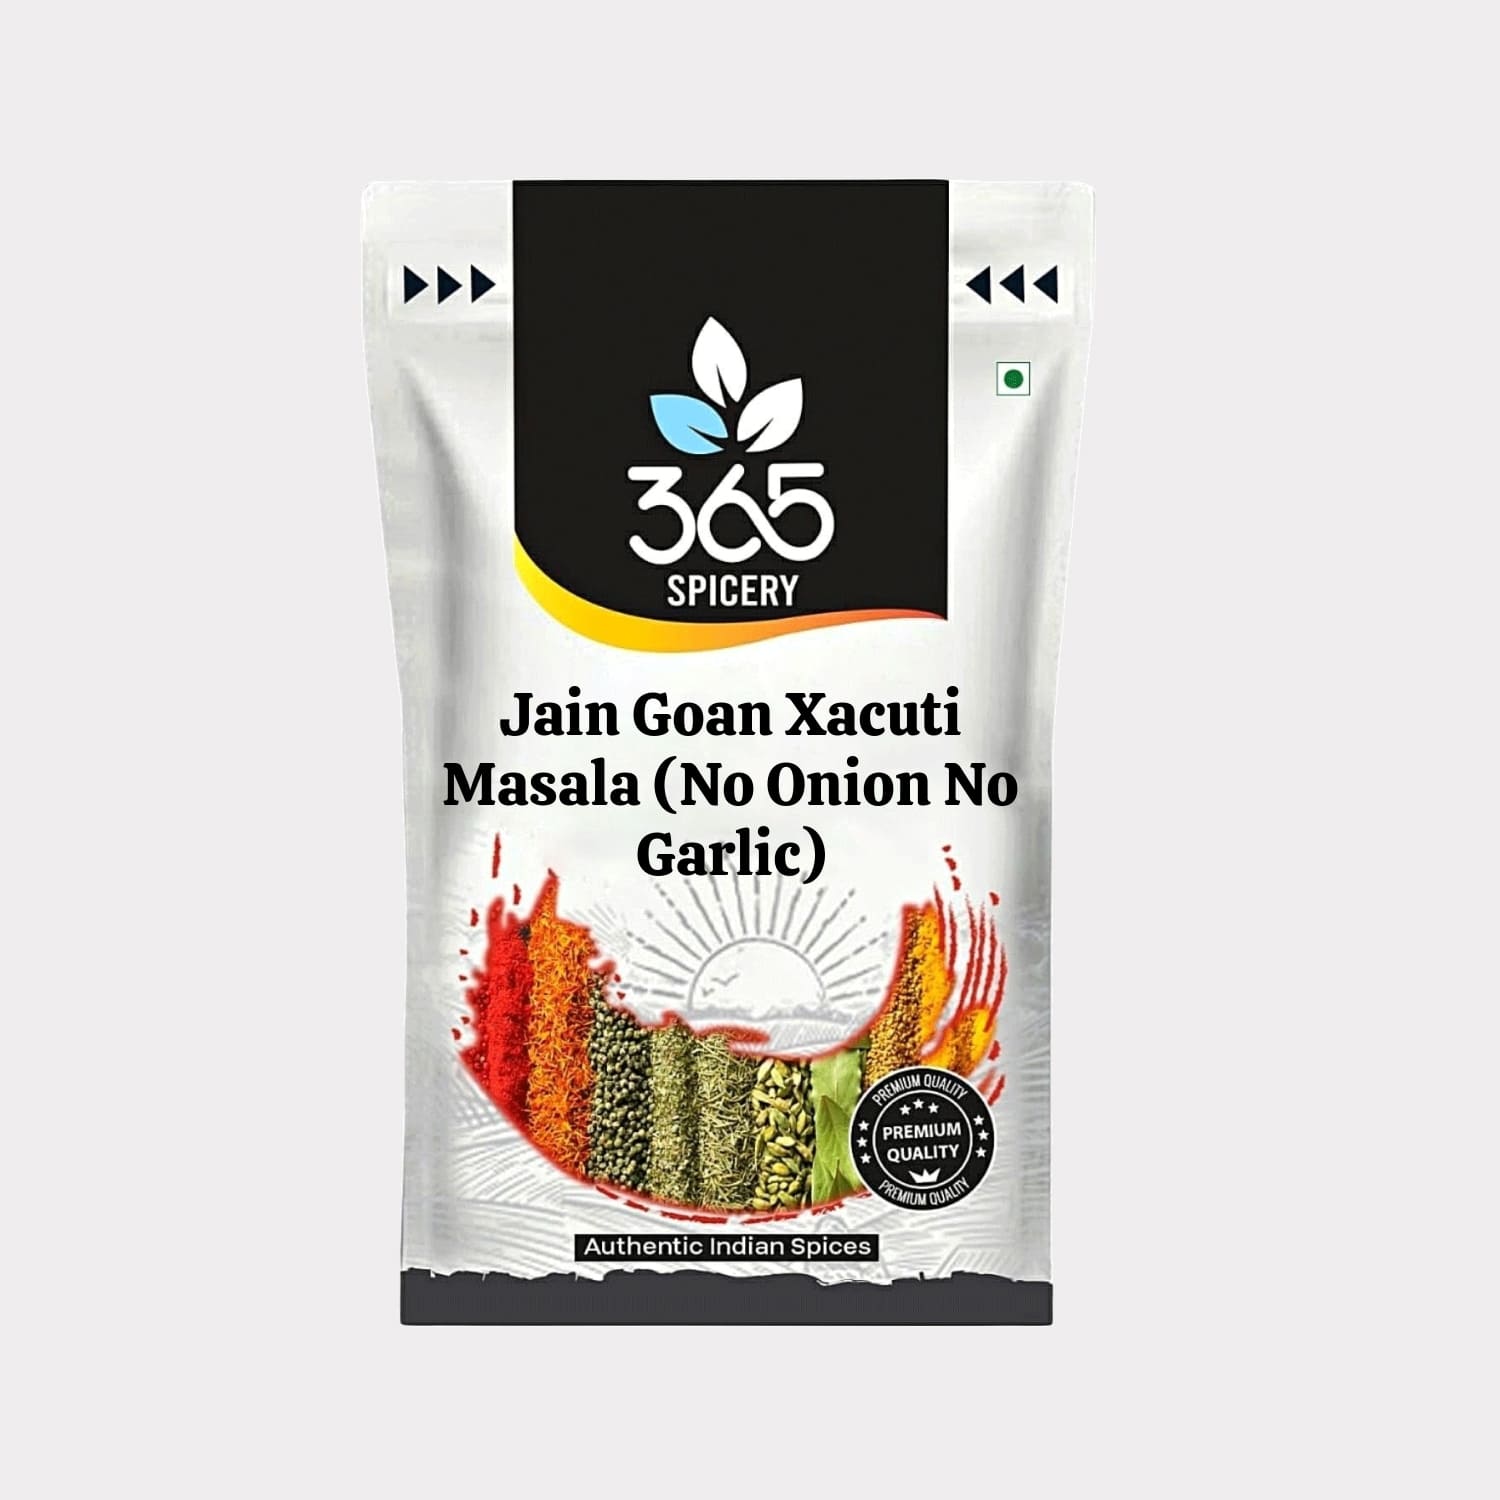 Jain Goan Xacuti Masala (No Onion No Garlic)